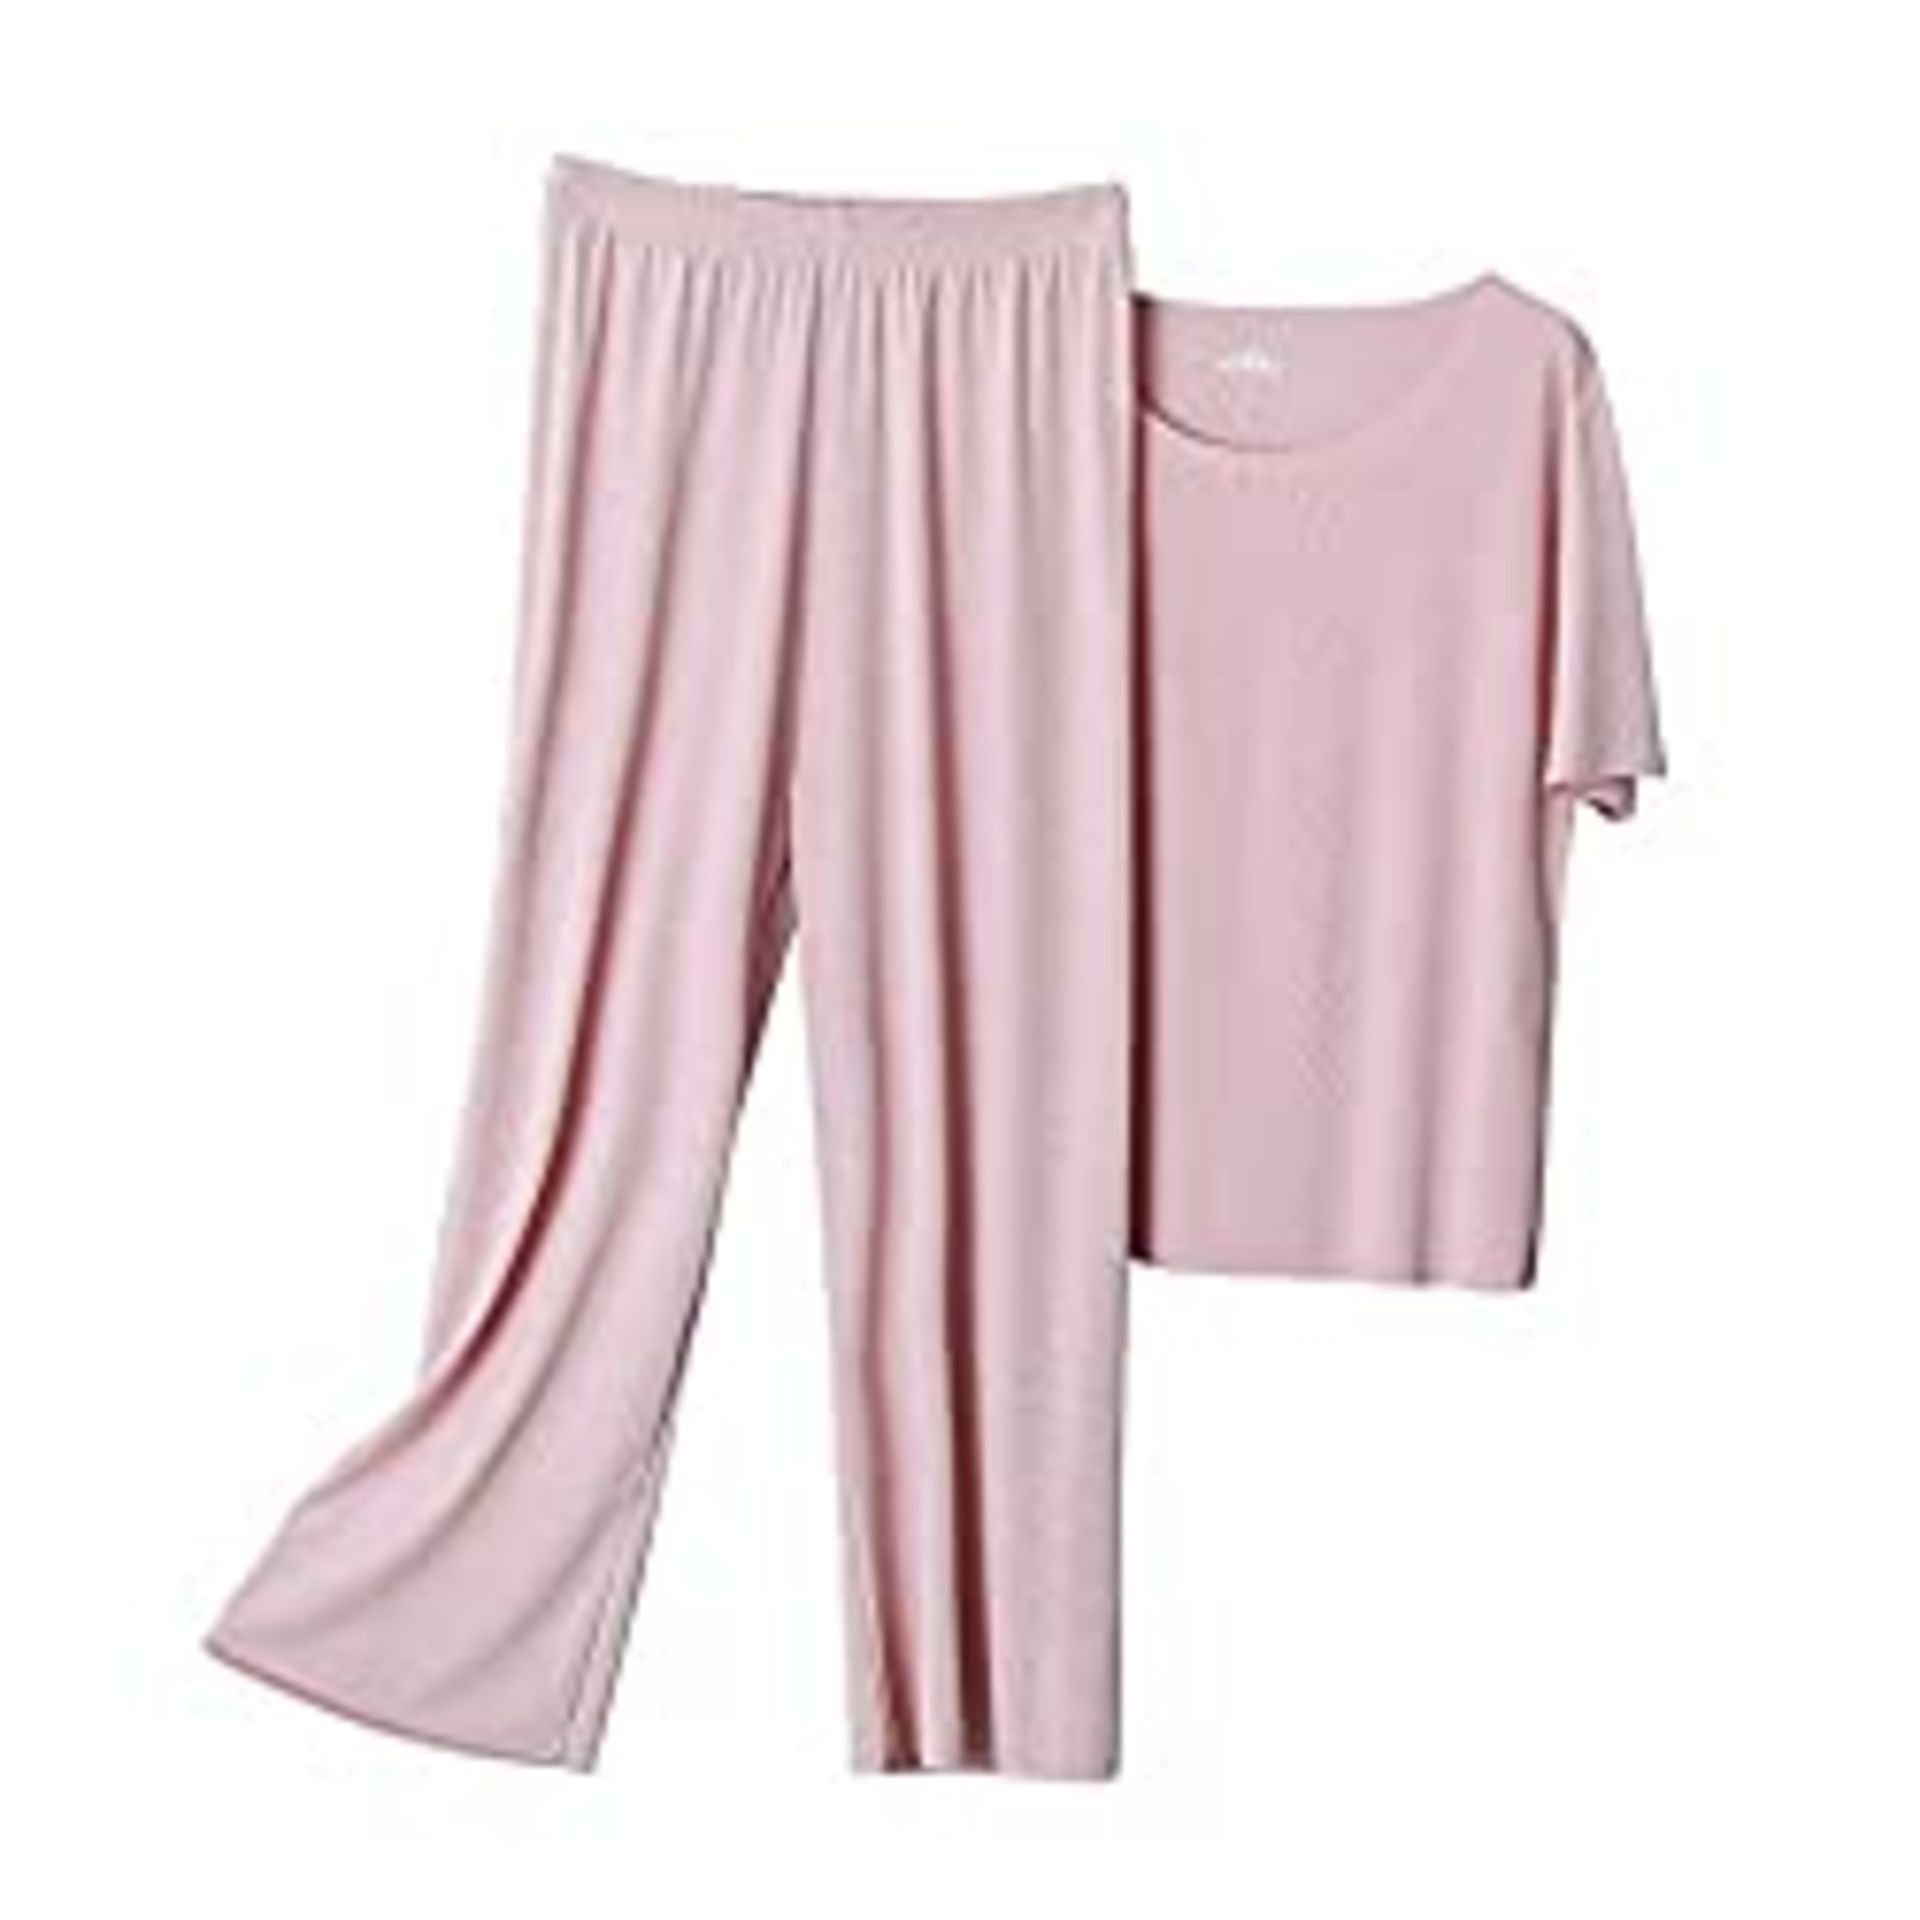 RRP £17.99 BRAND NEW STOCK CHOO AYO Women's Pajamas Set Short Sleeve Ladies Pyjamas